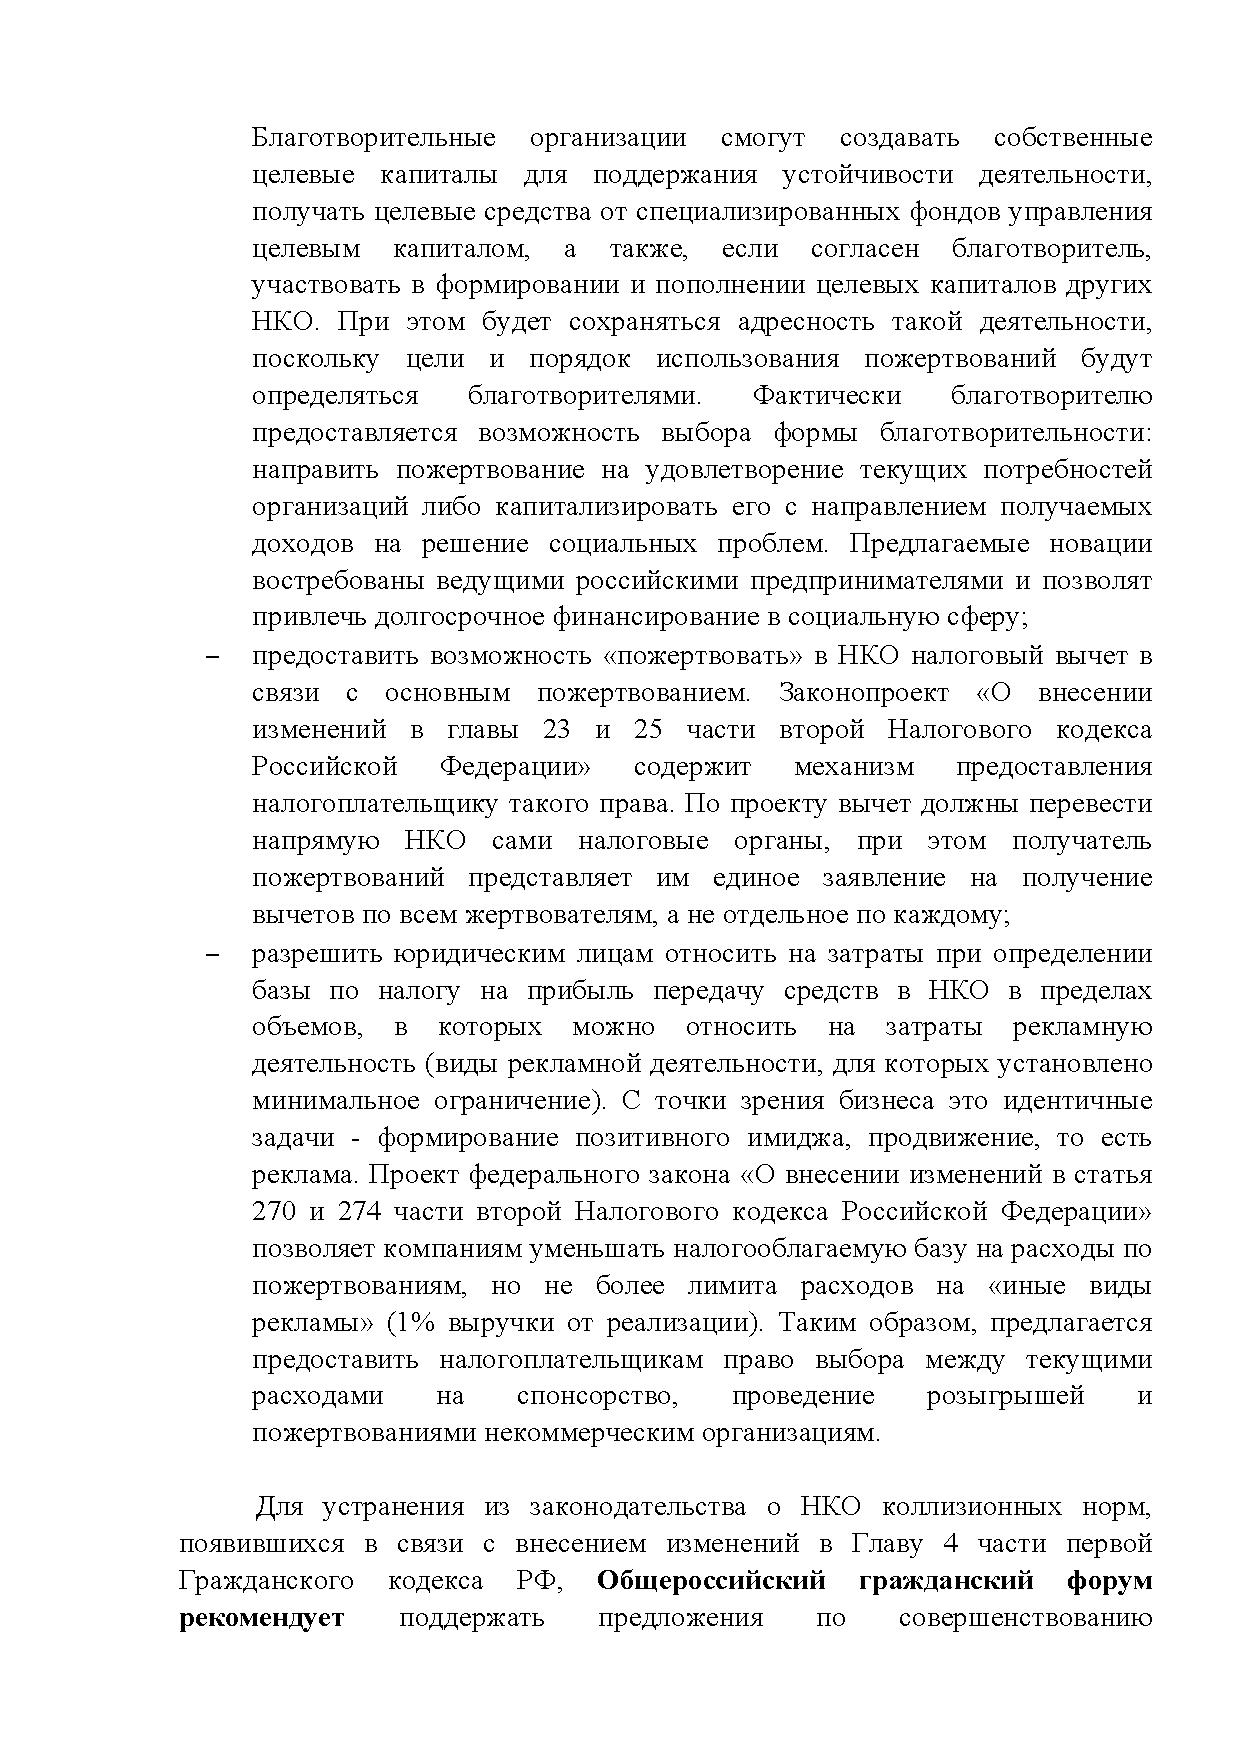  Опубликованы Предложения Общероссийского гражданского форума 2015 - фото 10